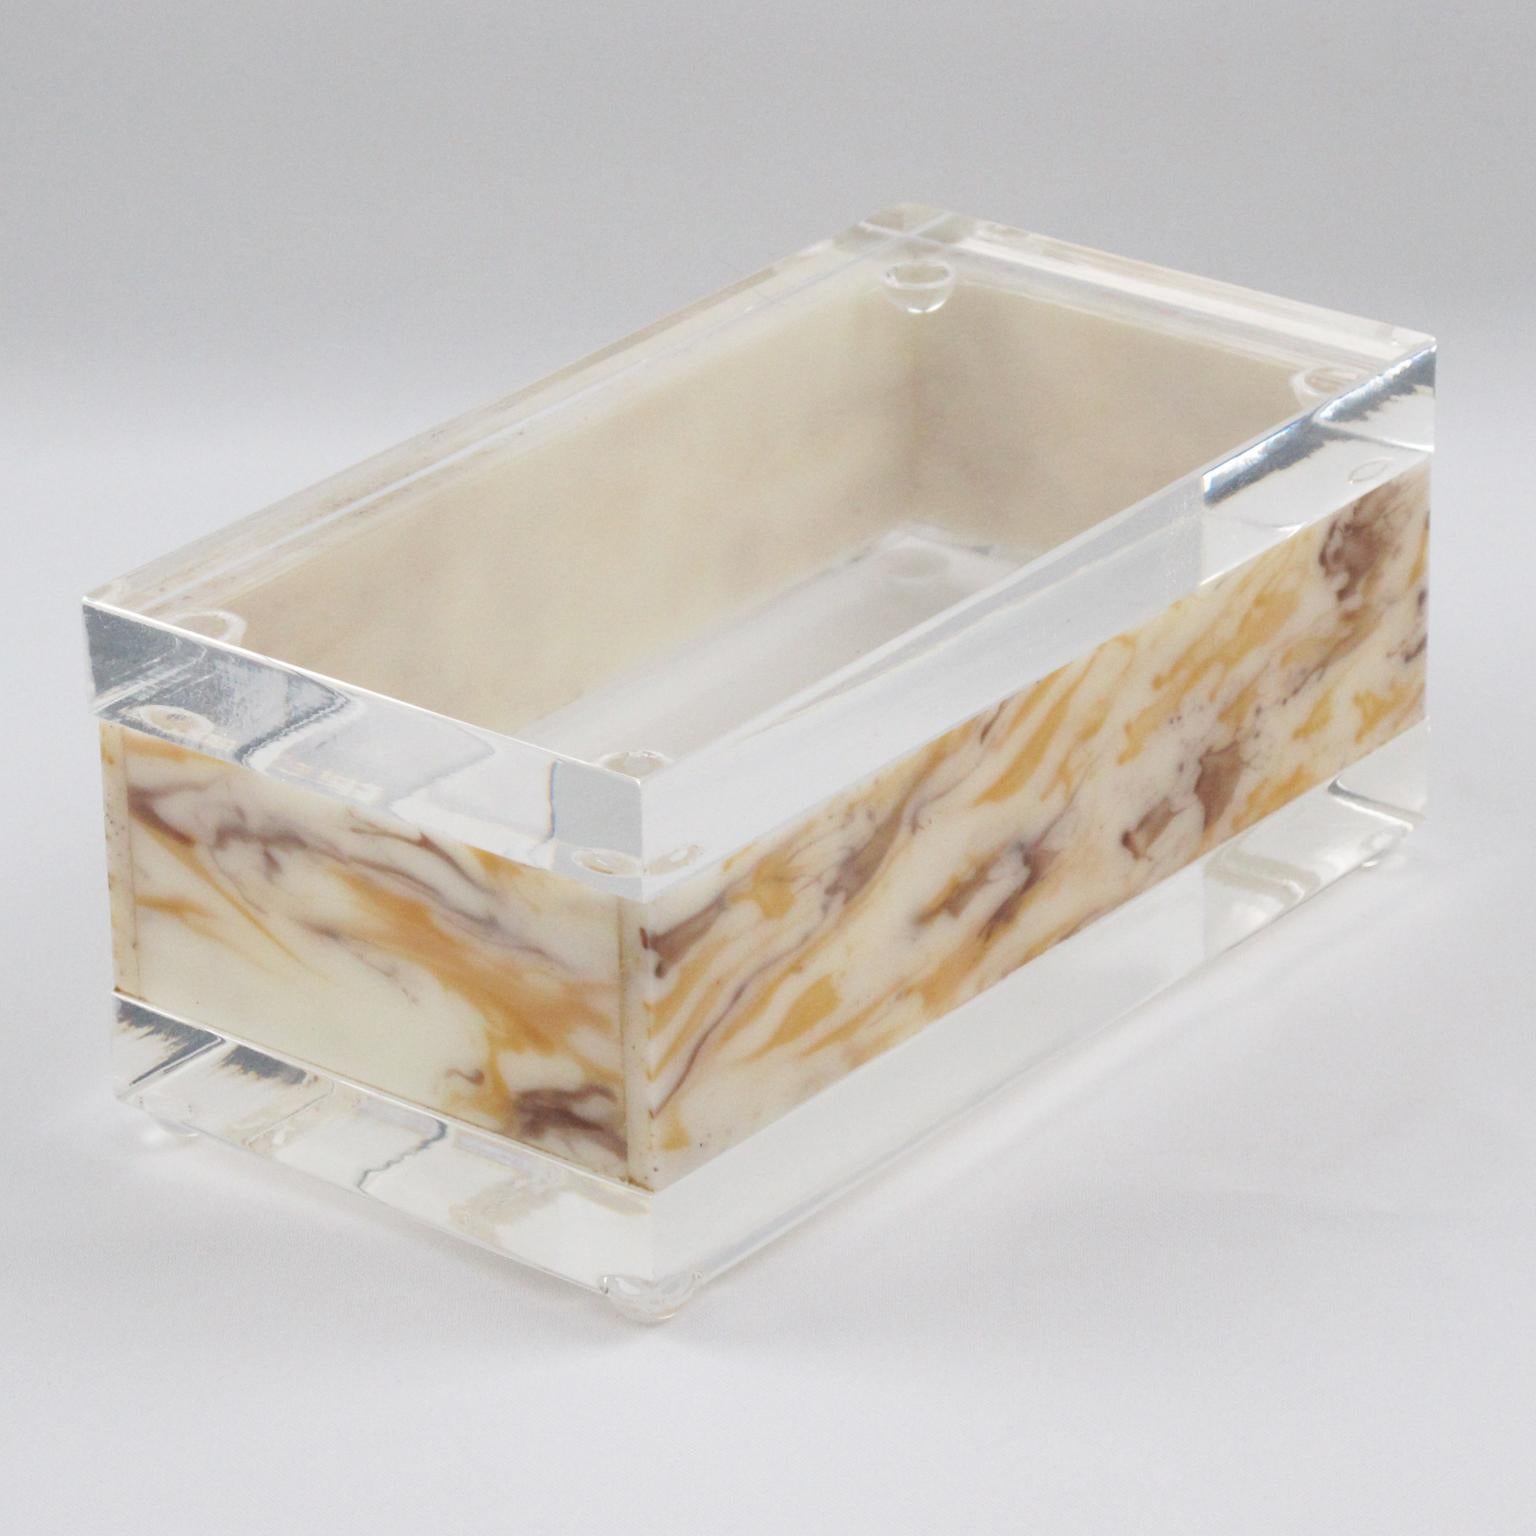 Cette jolie boîte moderniste en Lucite a été fabriquée dans les années 1970. La forme rectangulaire est ornée d'un motif texturé en Lucite ou en acrylique transparent et en faux marbre. L'étonnante couleur miel laiteux et tourbillon d'ambre